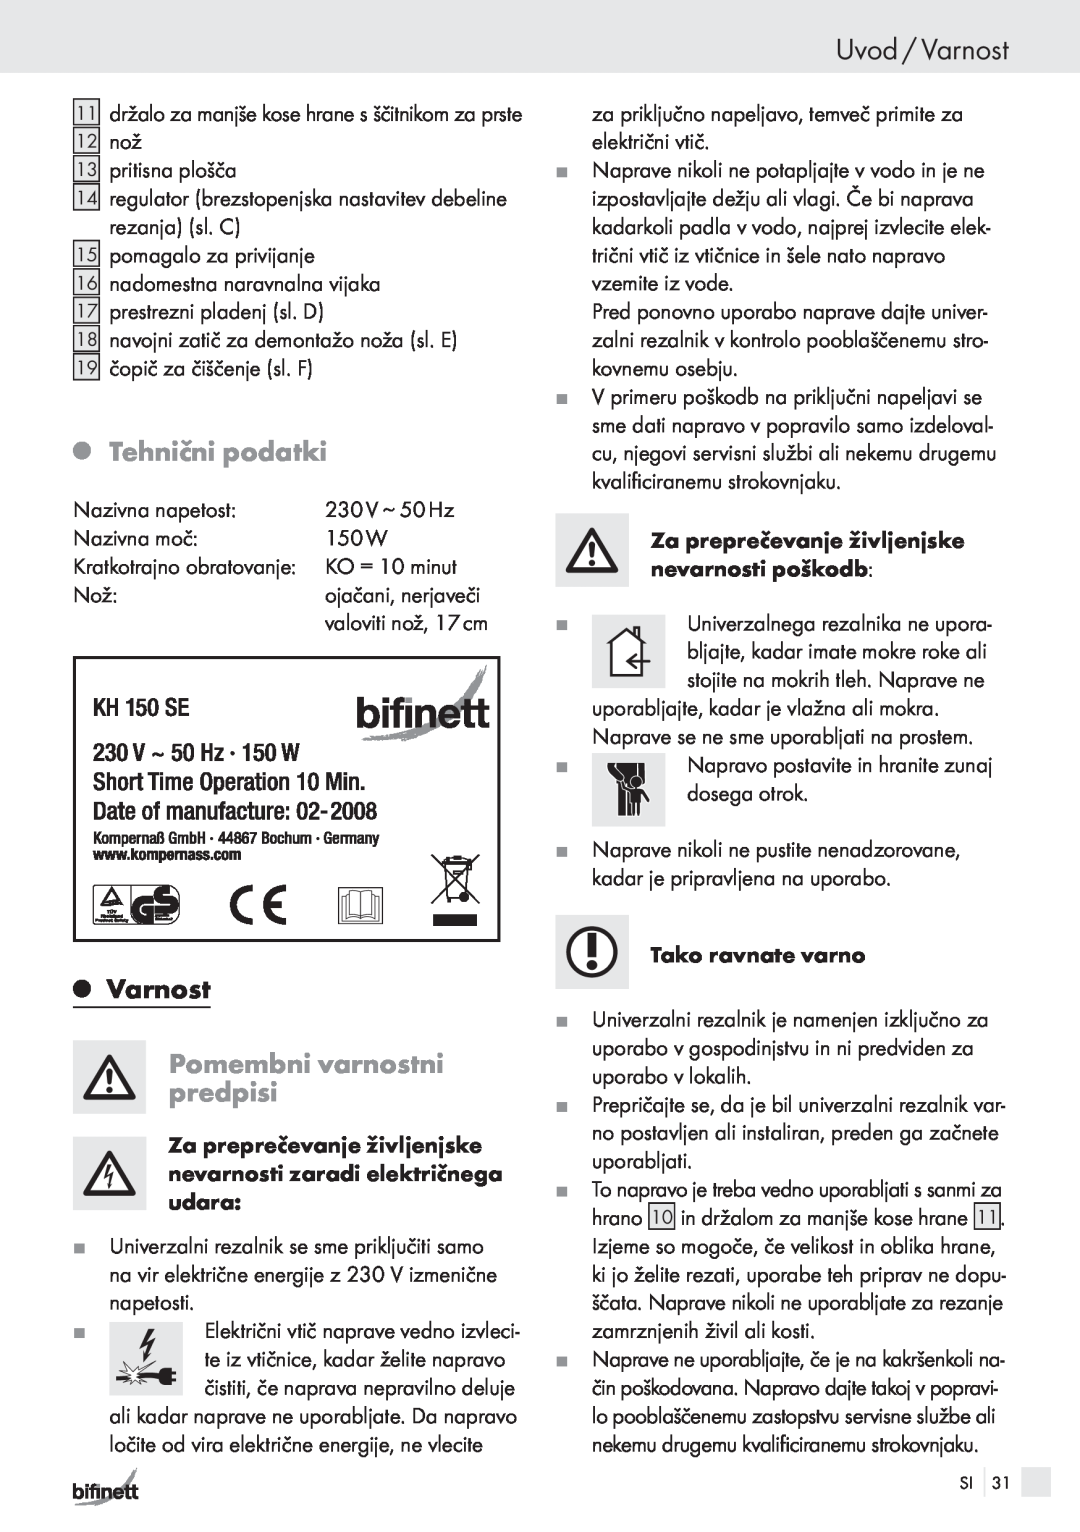 Bifinett KH 150 manual Uvod / Varnost, QTehnični podatki, QVarnost, Pomembni varnostni predpisi 